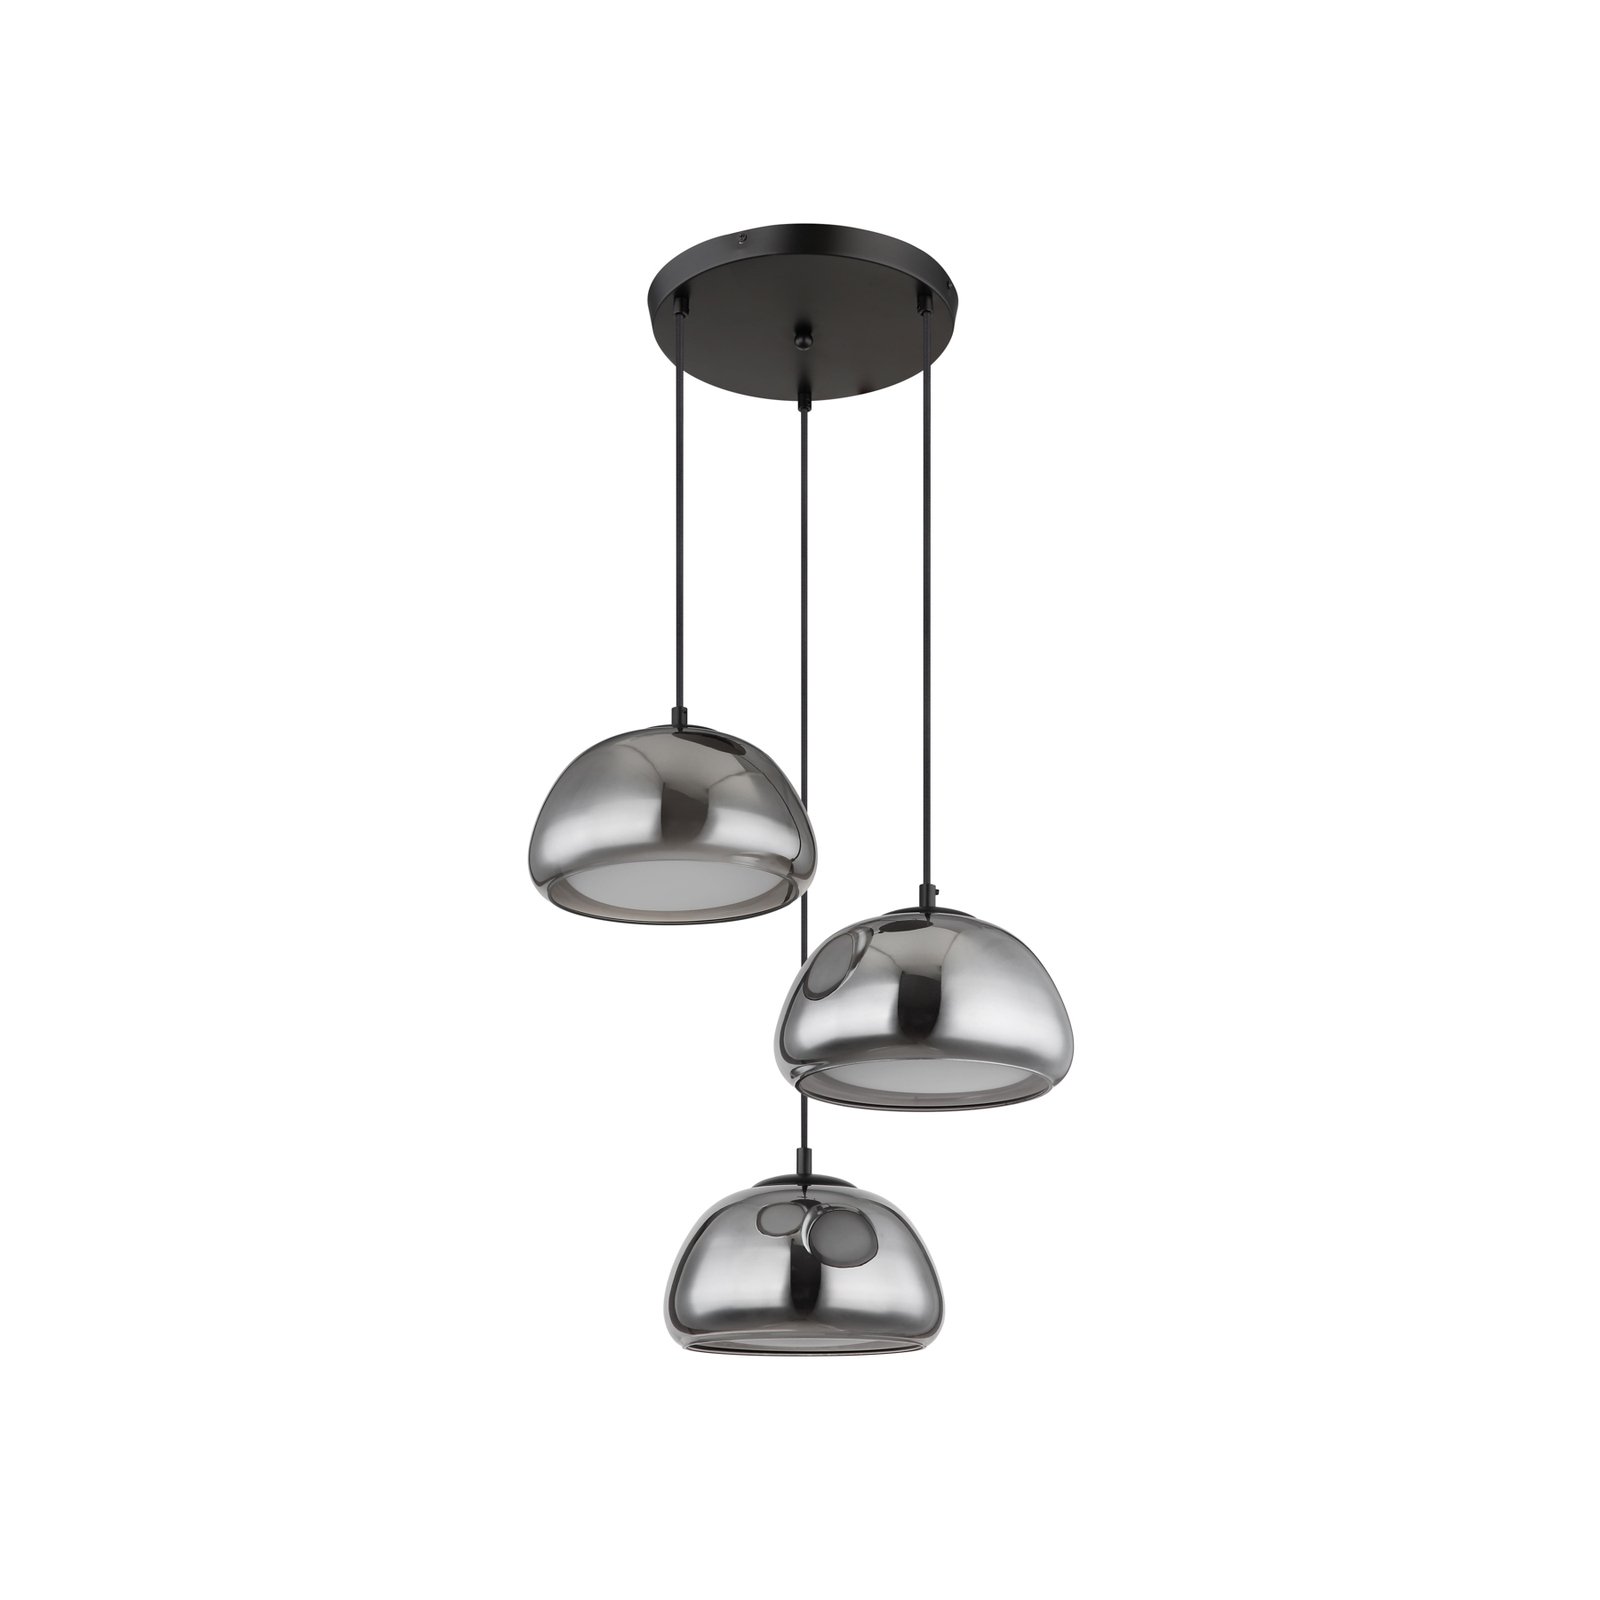 Jella hanglamp, lengte 95 cm, rookgrijs, 3-lamps, glas